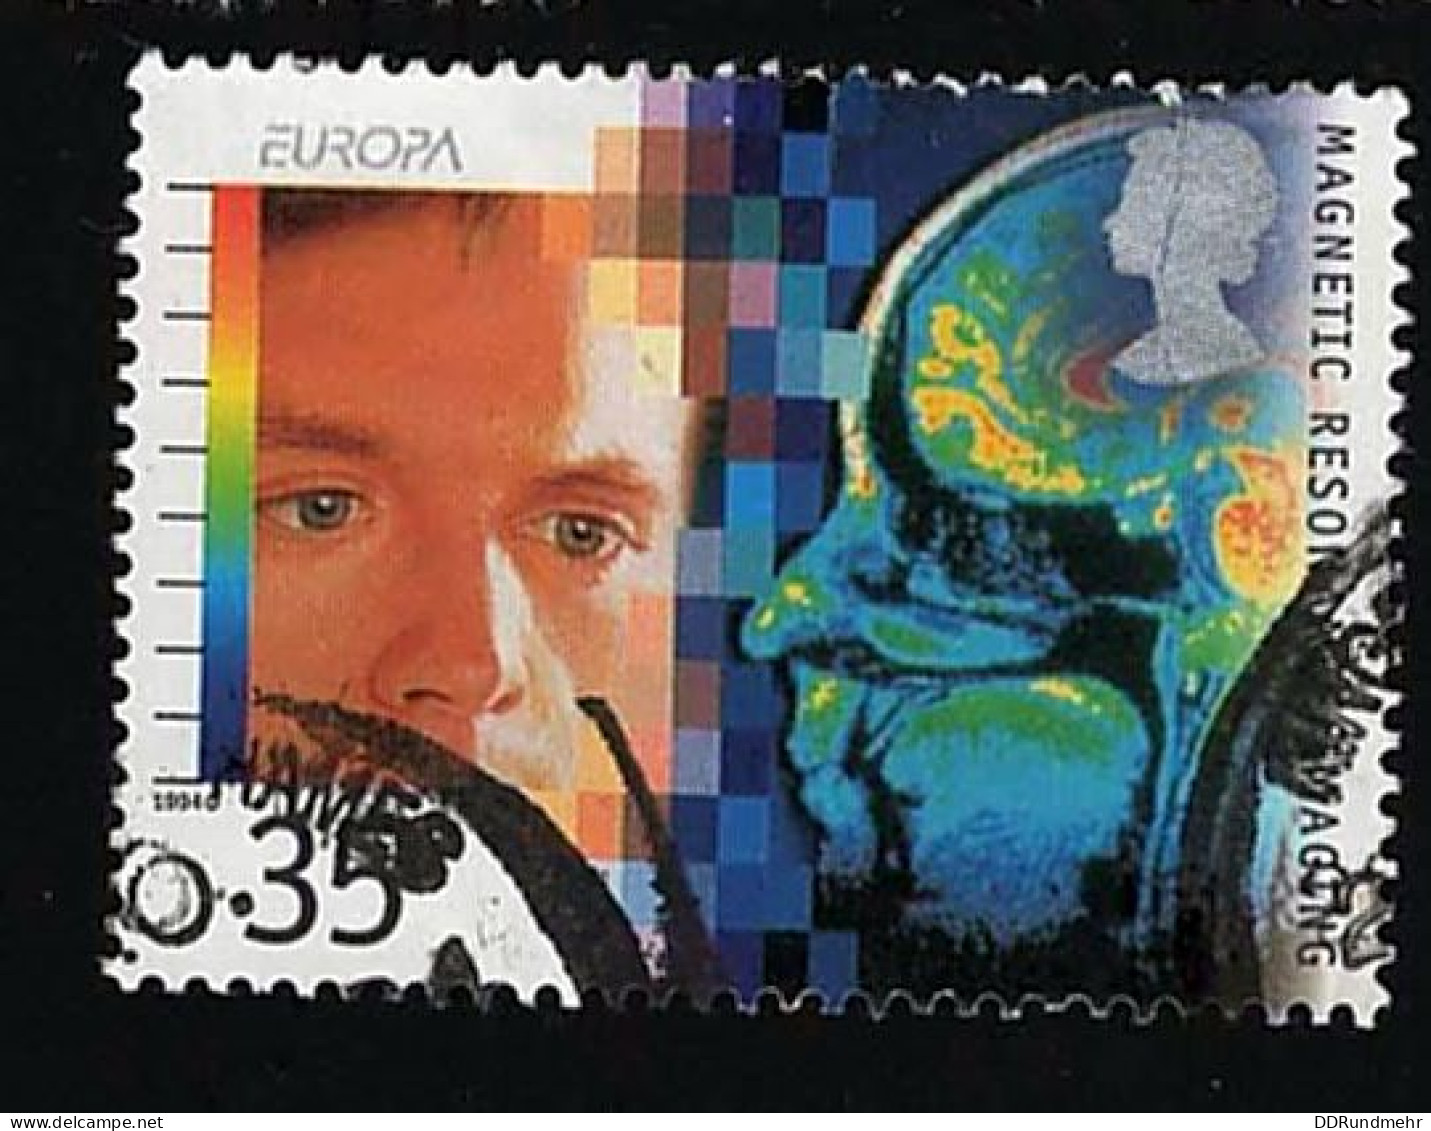 1994 Europa  Michel GB 1537 Stamp Number GB 1579 Yvert Et Tellier GB 1782 Stanley Gibbons GB 1841 AFA GB 1700  Used - Gebruikt